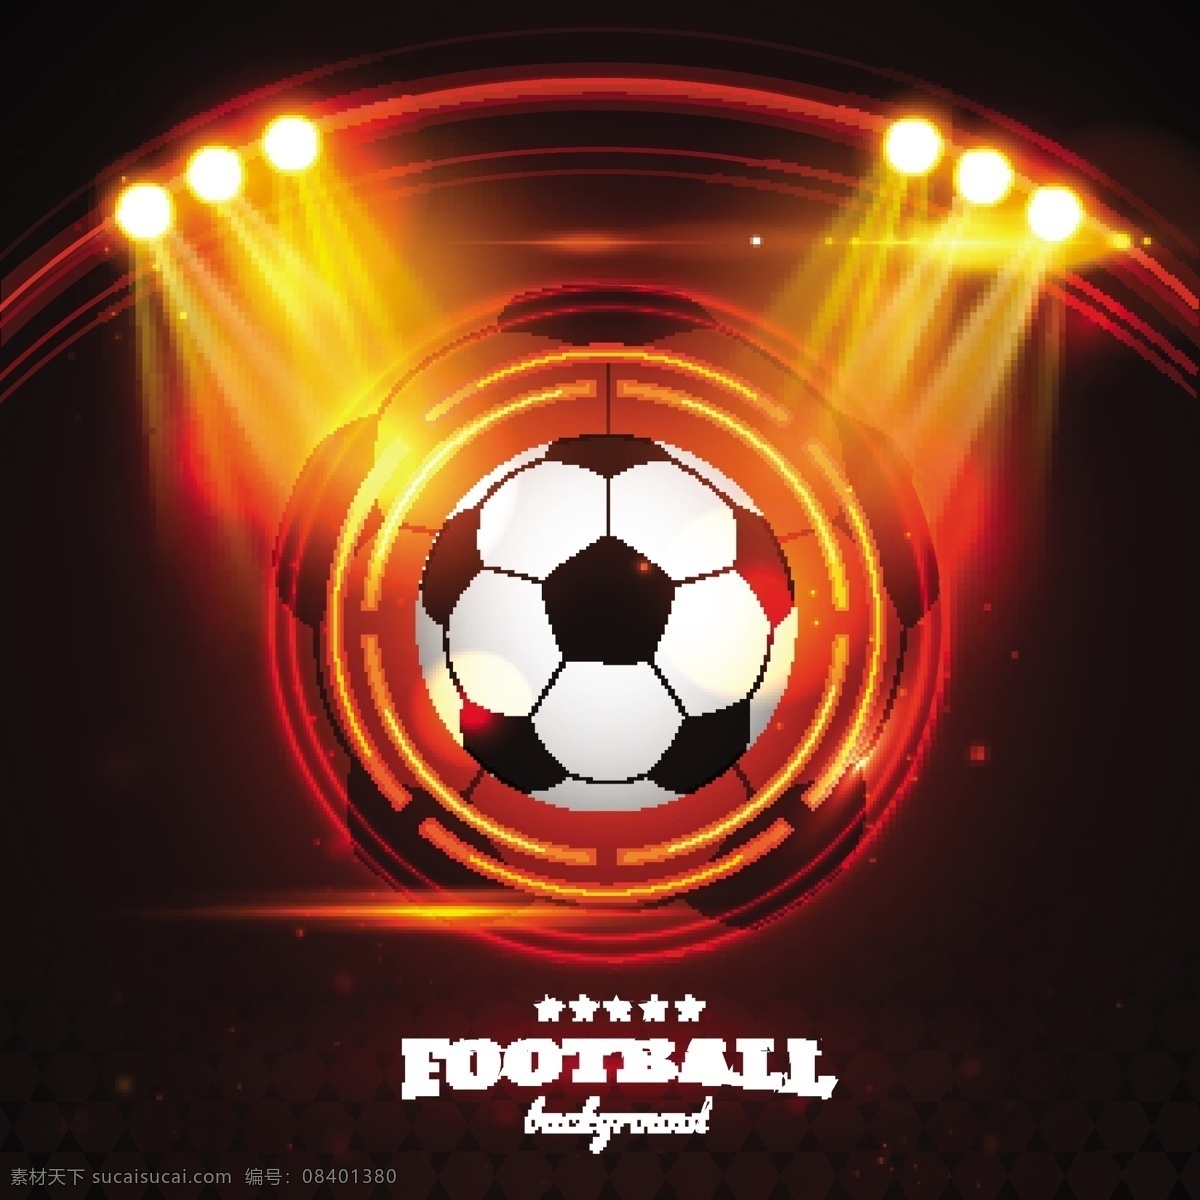 足球世界杯 足球 足球比赛 足球设计 体育 体育设计 世界杯 欧洲杯 足球运动 体育比赛 巴西世界杯 2014 体育运动 足球广告 宣传设计 矢量 文化艺术